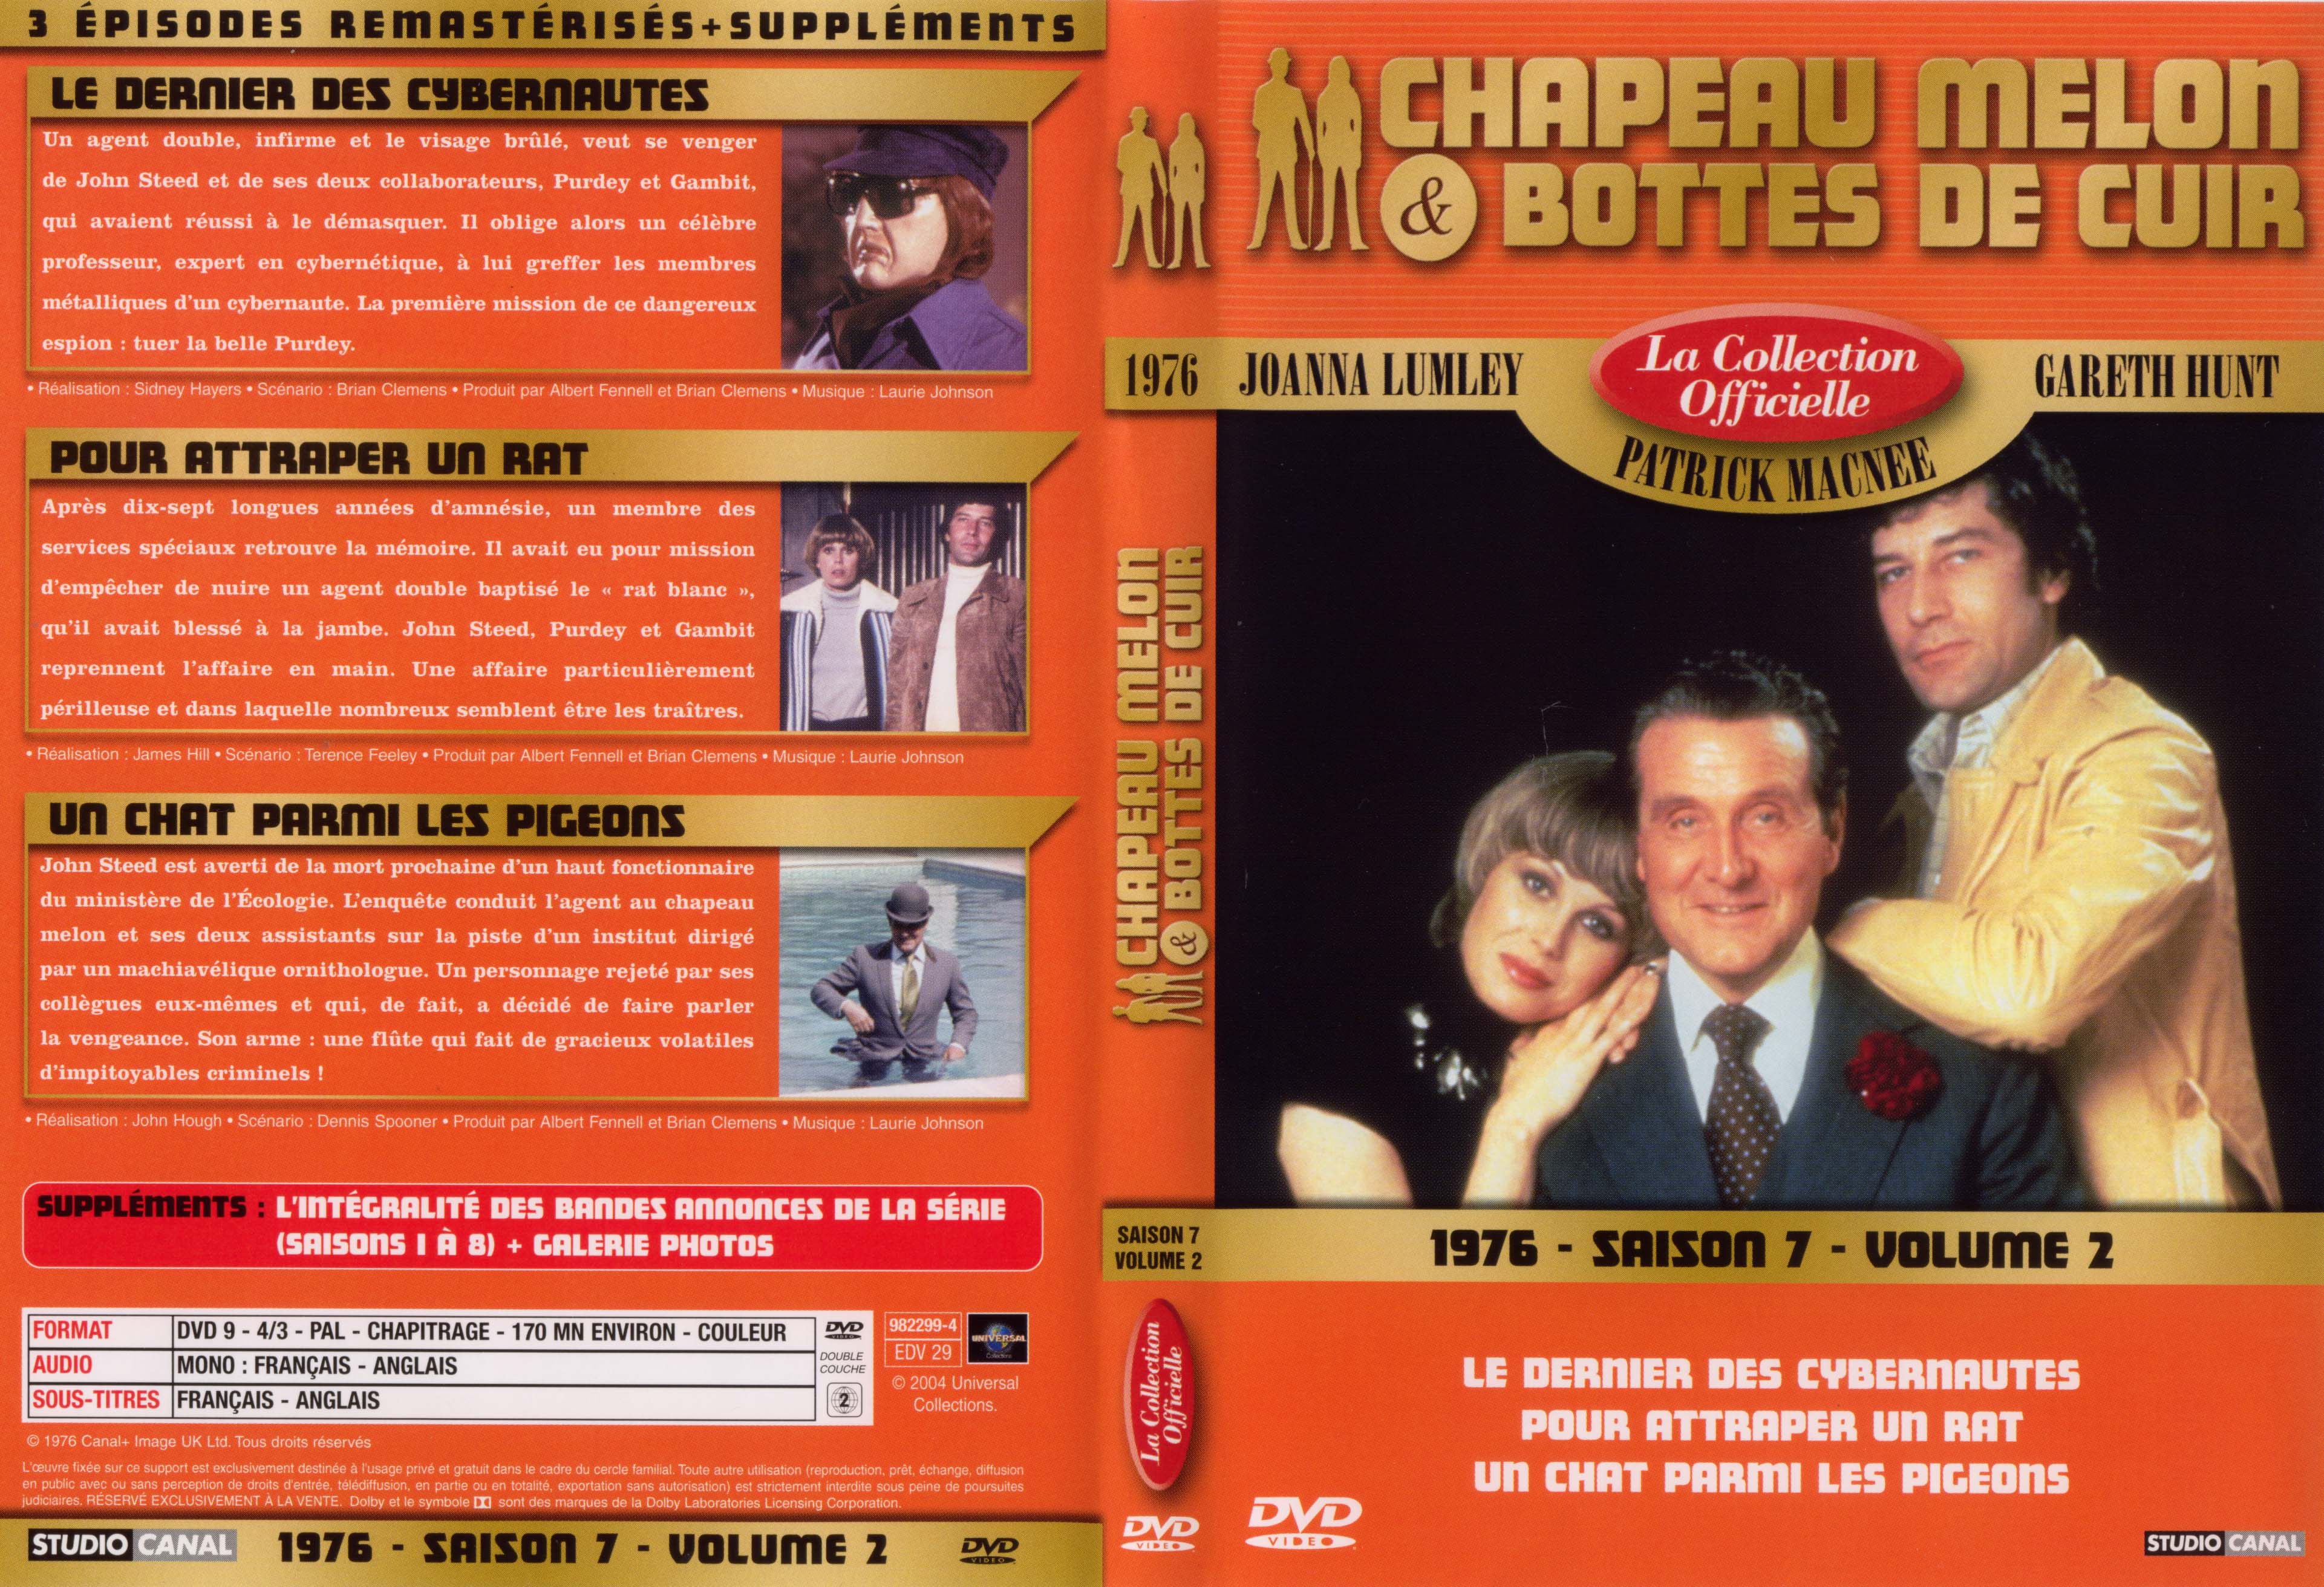 Jaquette DVD Chapeau melon et bottes de cuir 1976 saison 7 vol 2